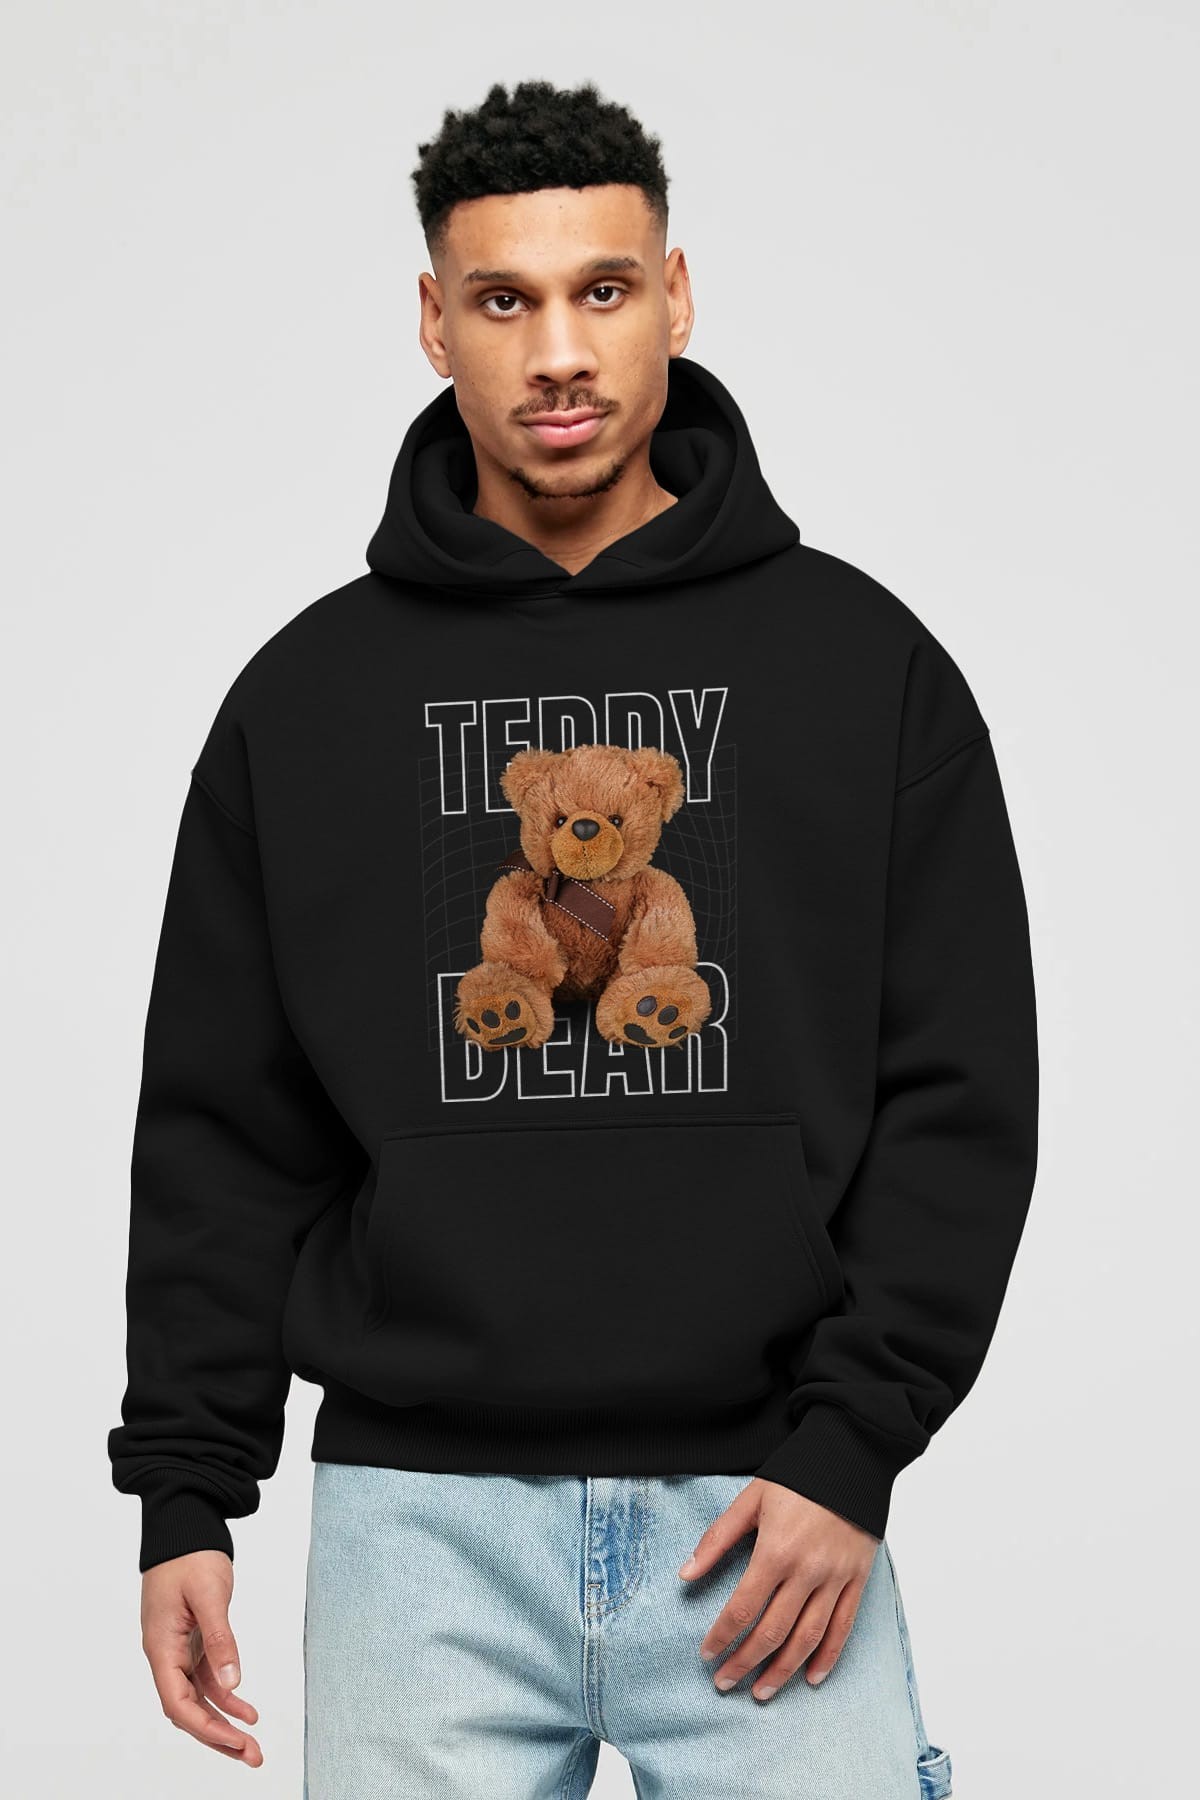 Teddy Bear Yazılı Ön Baskılı Oversize Hoodie Kapüşonlu Sweatshirt Erkek Kadın Unisex